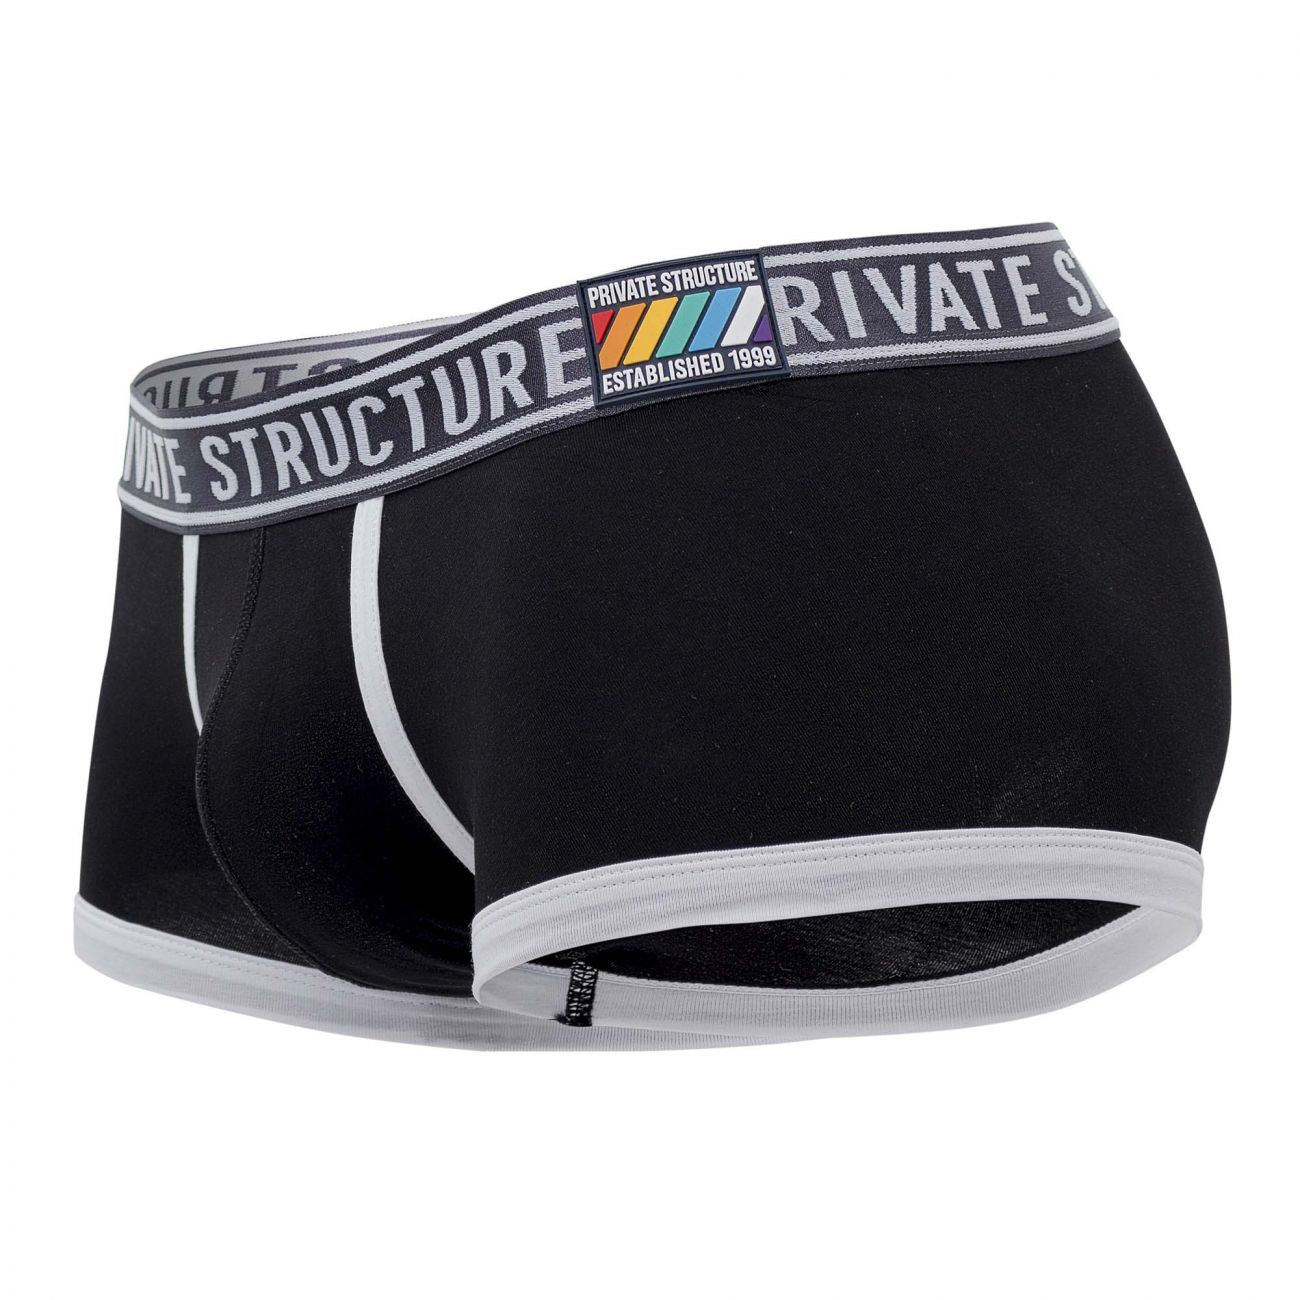 Private Structure Pride Trunks